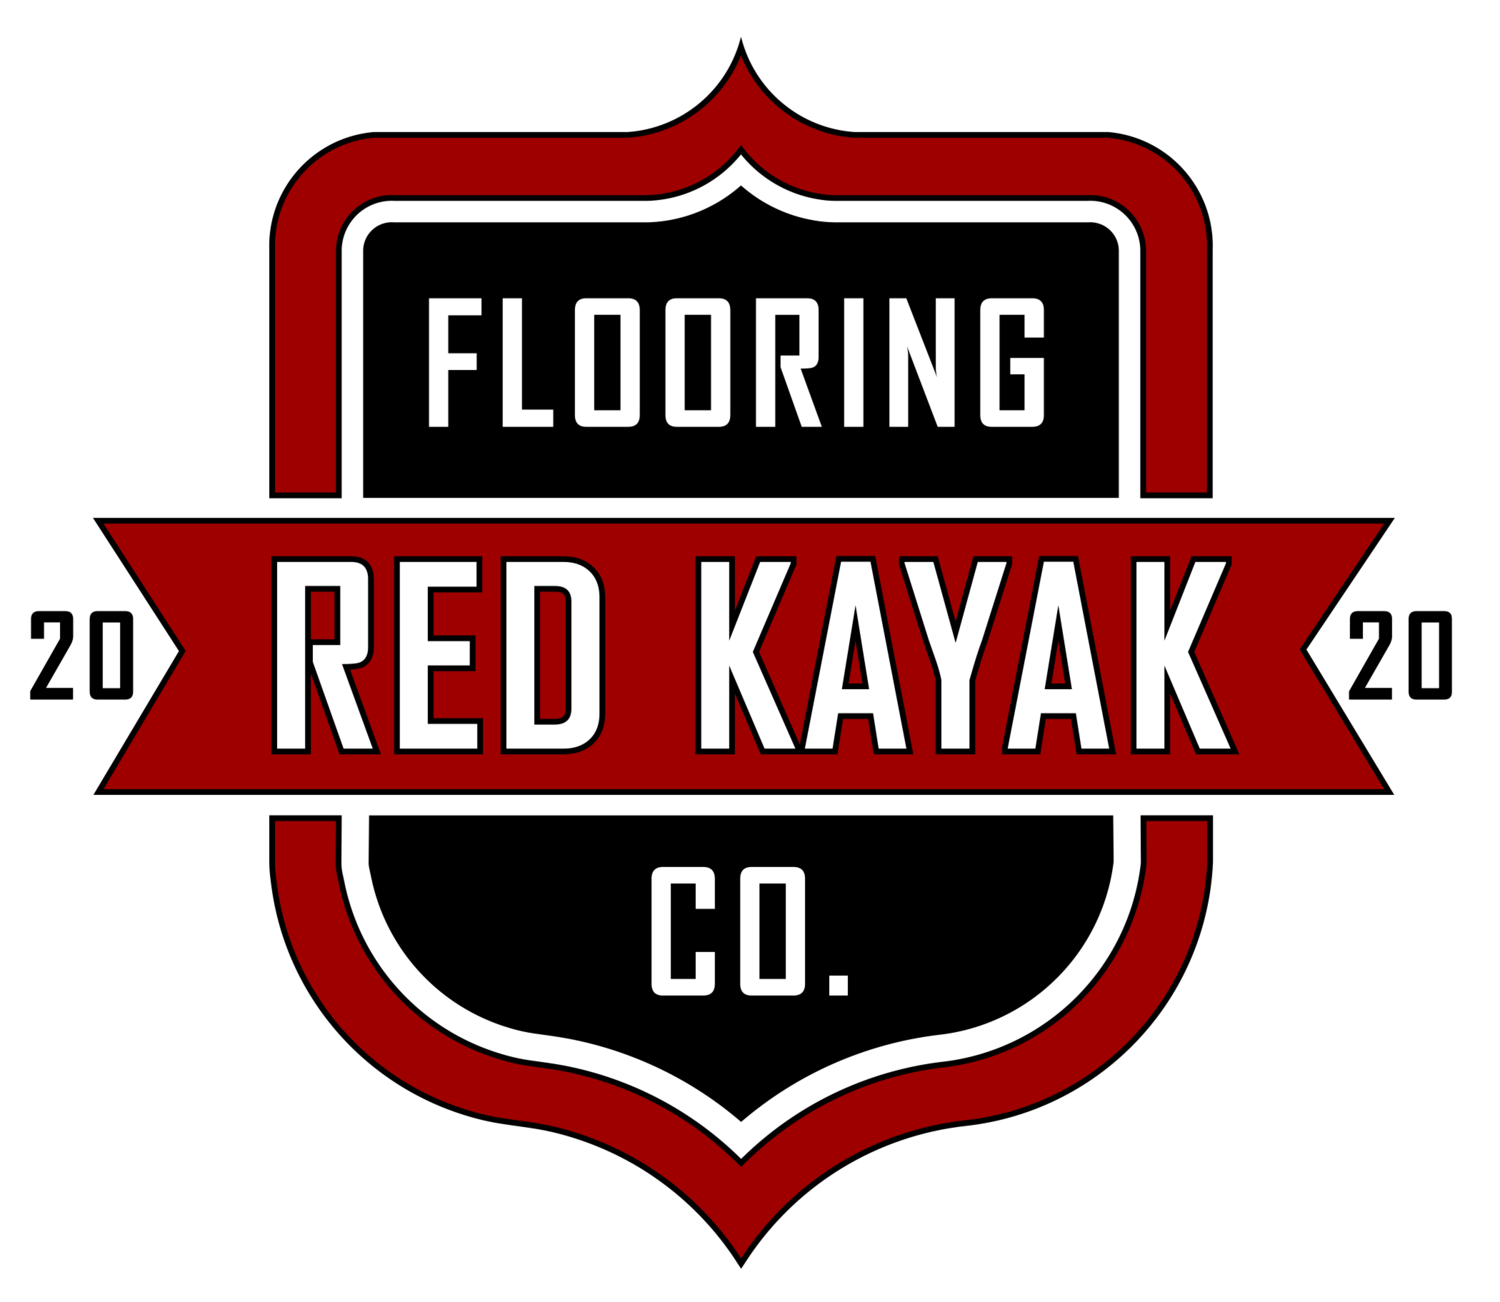 Red Kayak Flooring Co.